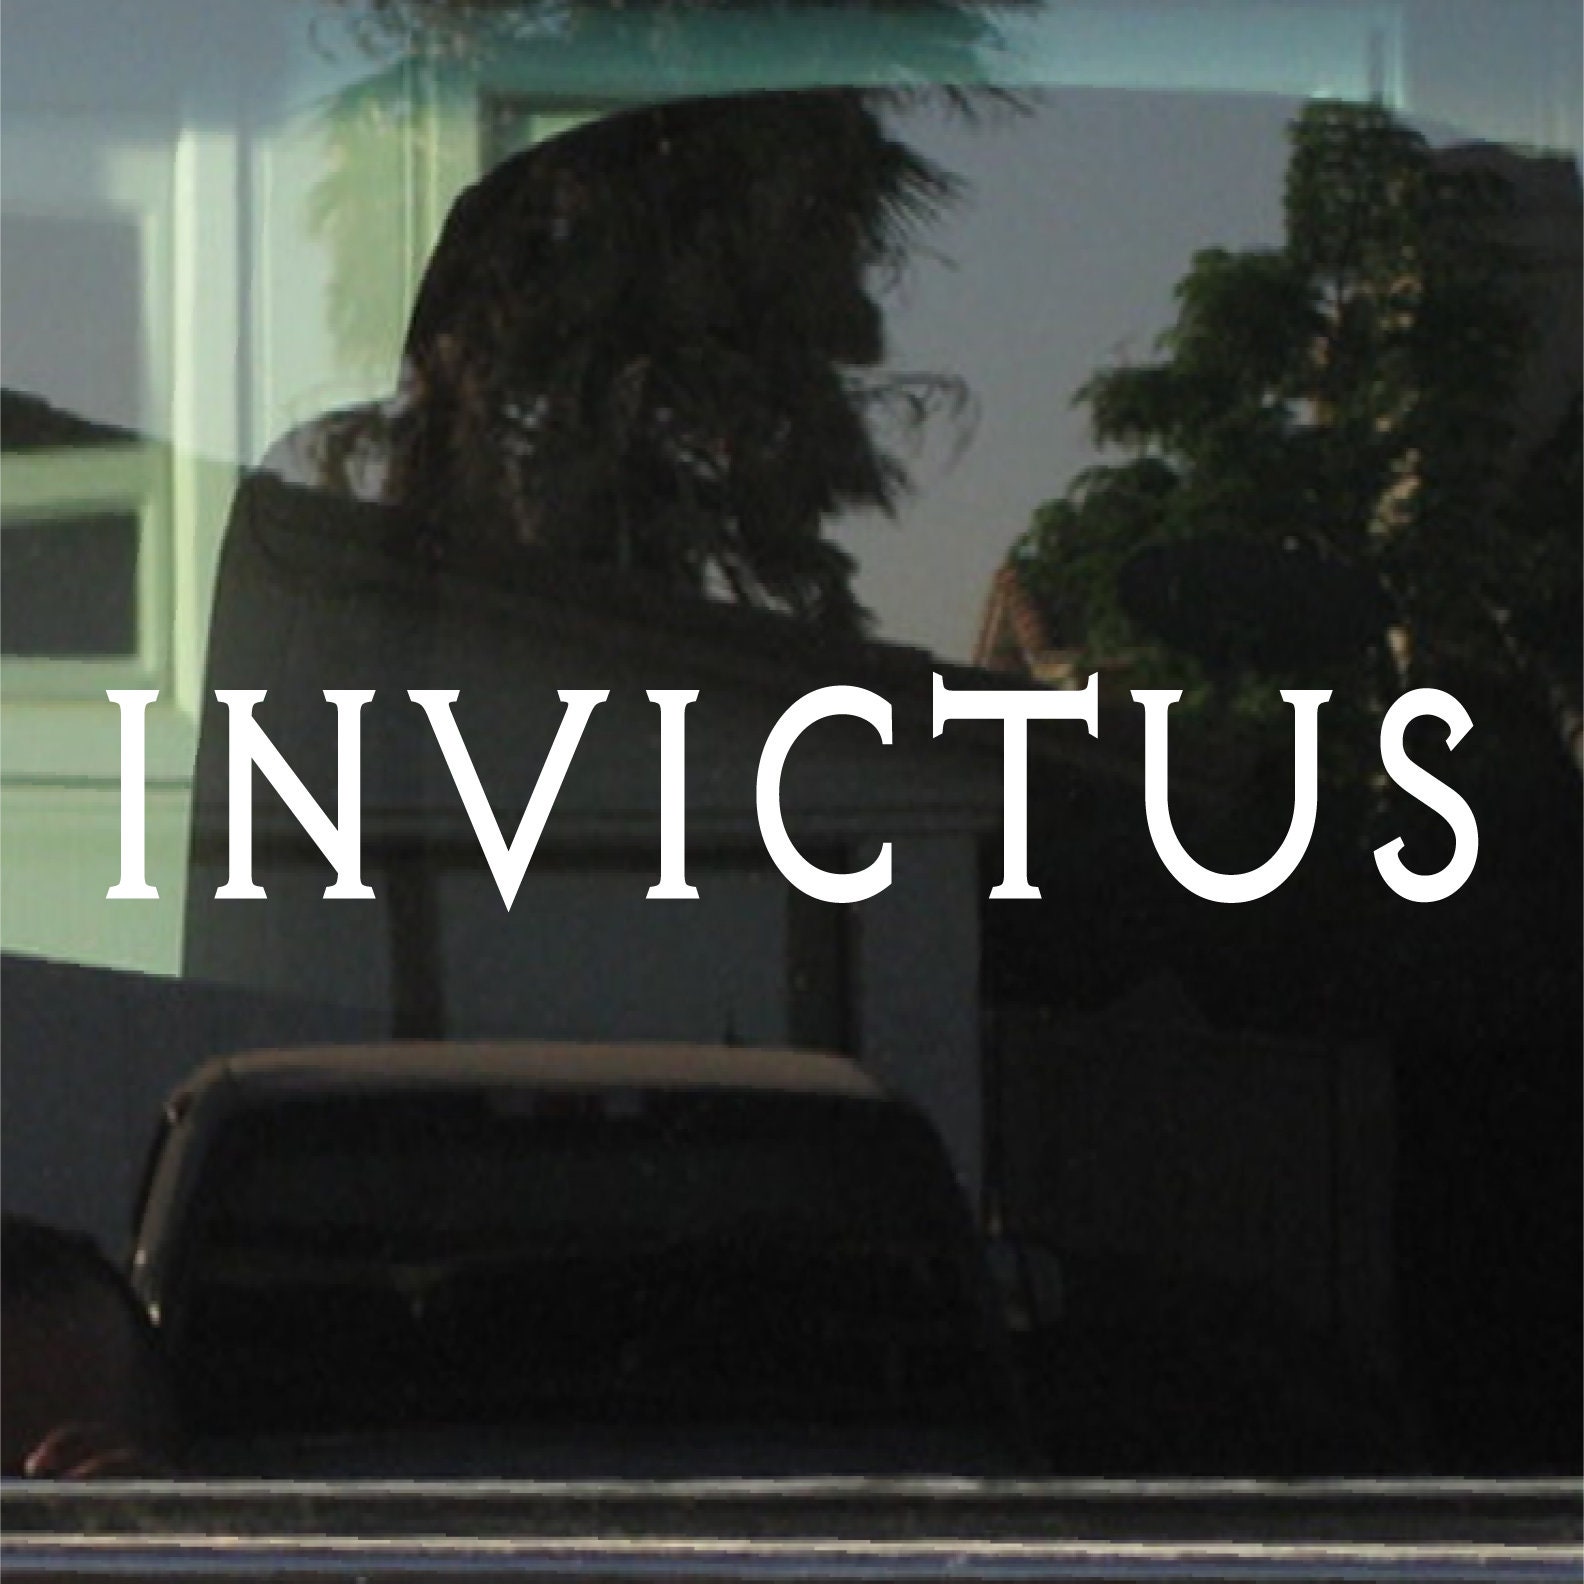 Invictus | Latein Für Unbesiegbar Oder Unbesiegt Benutzerdefinierte Vinyl Sticker/Aufkleber von 734designs